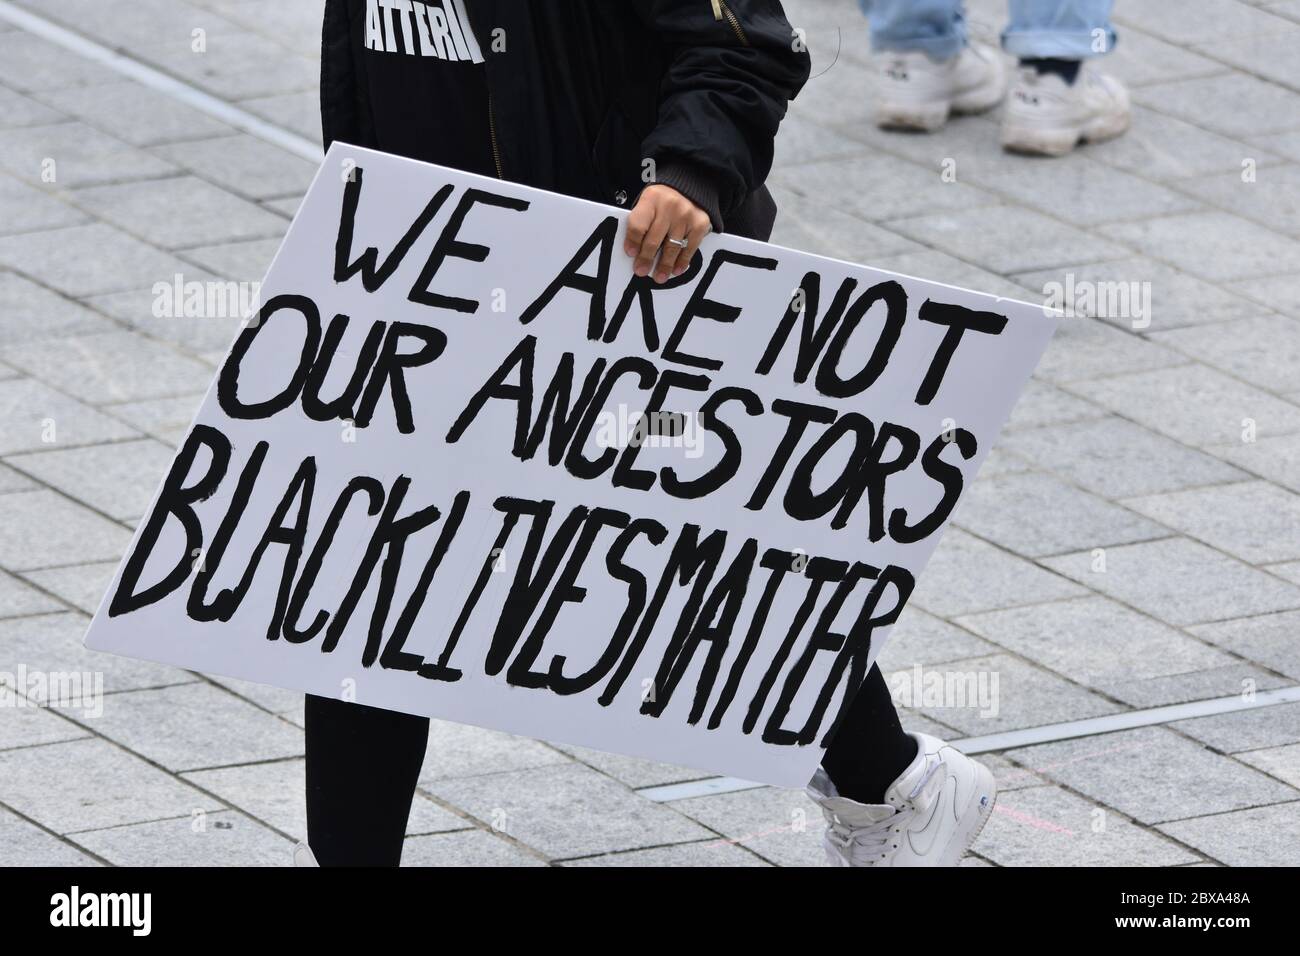 Un signe de protestation qui se lit comme suit : « nous ne sommes pas nos ancêtres », alors qu'un manifestant contre le racisme se manifeste lors d'une manifestation Black Lives Matter au Royaume-Uni en 2020 Banque D'Images